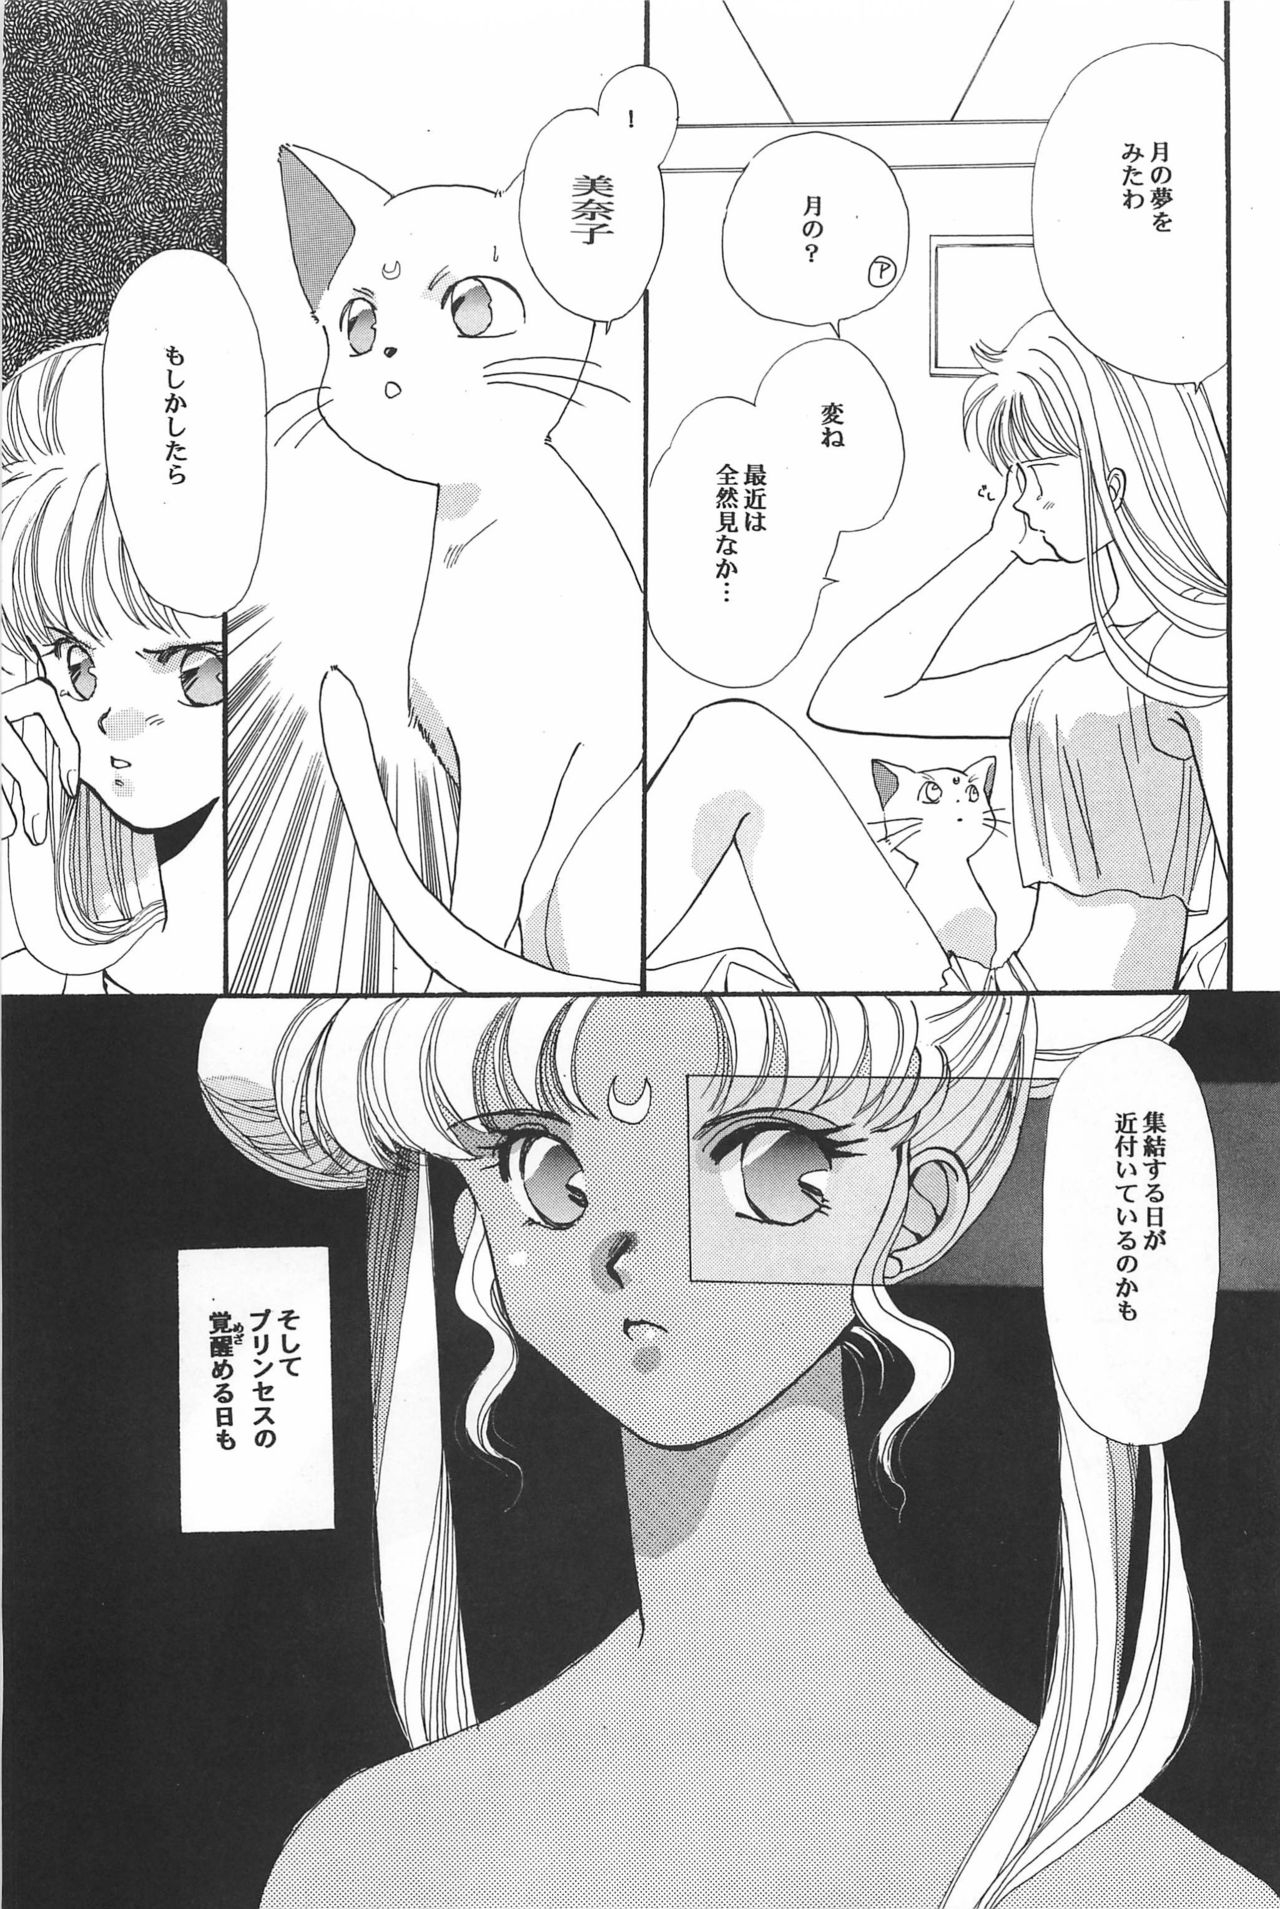 [Hello World (Muttri Moony)] Kaze no You ni Yume no You ni - Sailor Moon Collection (Sailor Moon) 108